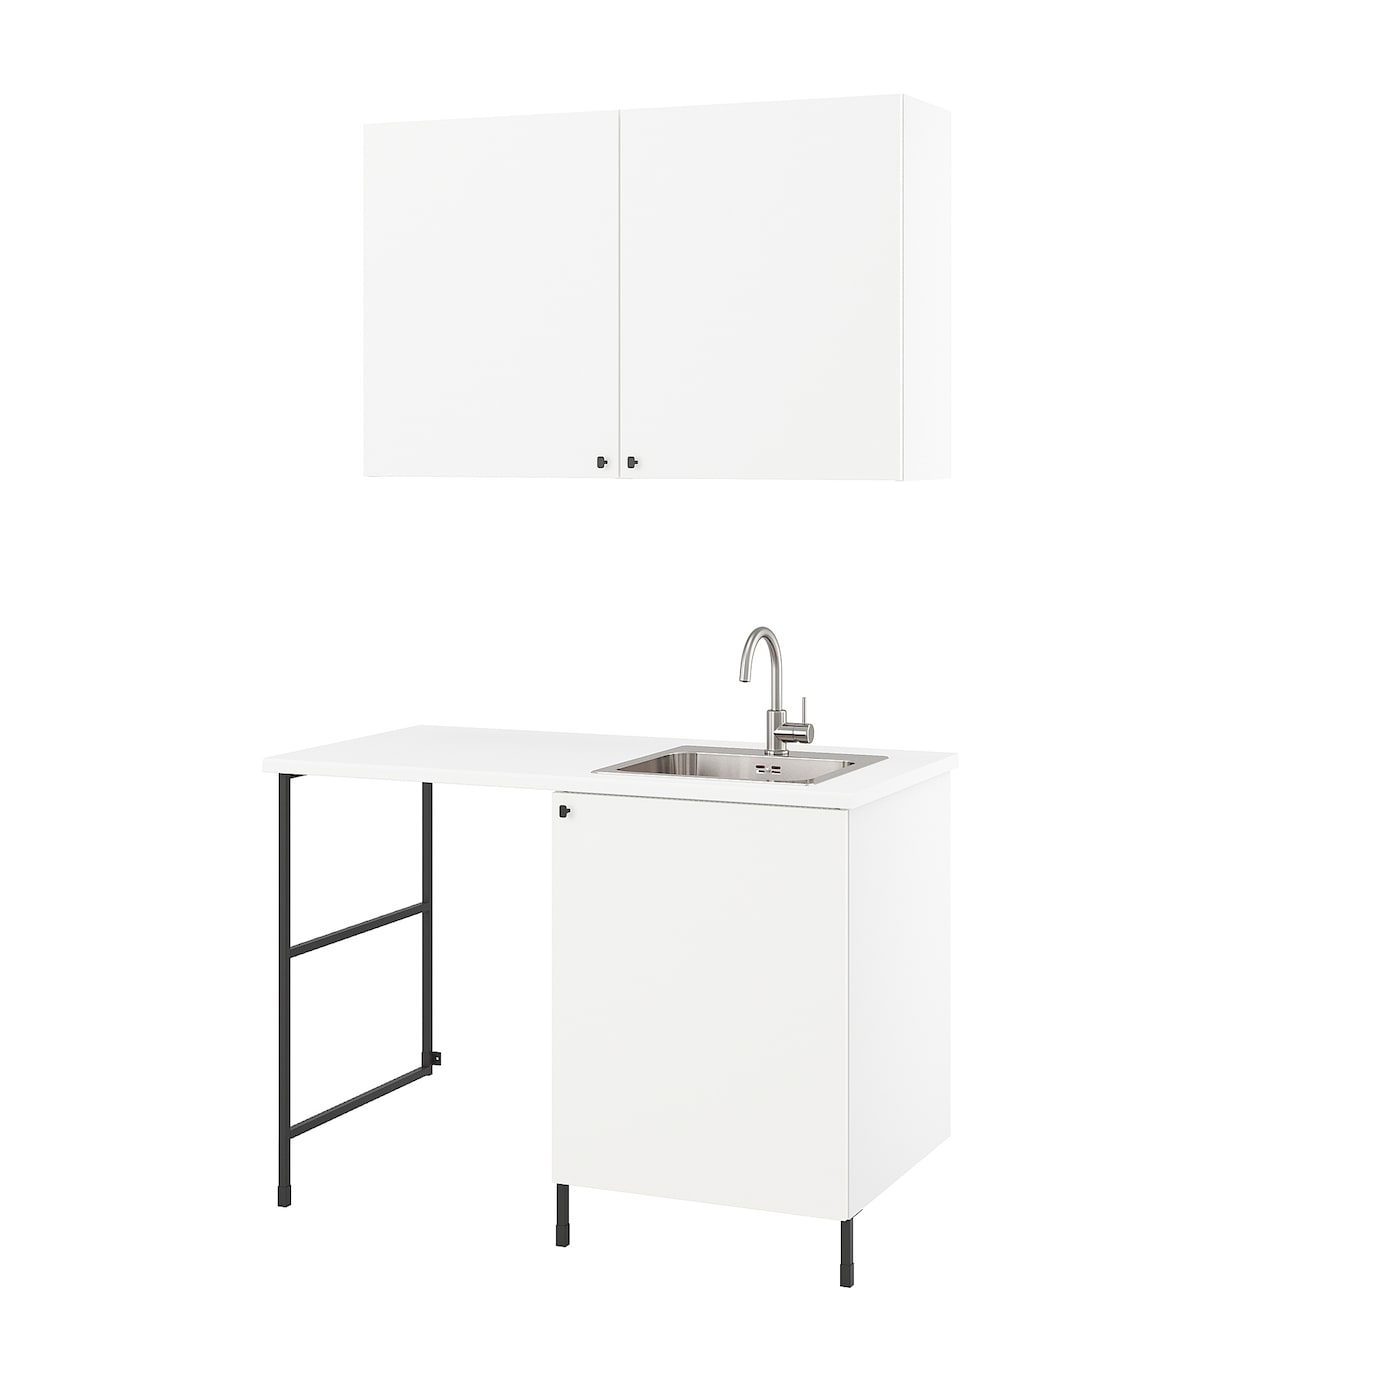 Комбинация для ванной - IKEA ENHET, 139х63.5х87.5 см, белый/антрацит, ЭНХЕТ ИКЕА